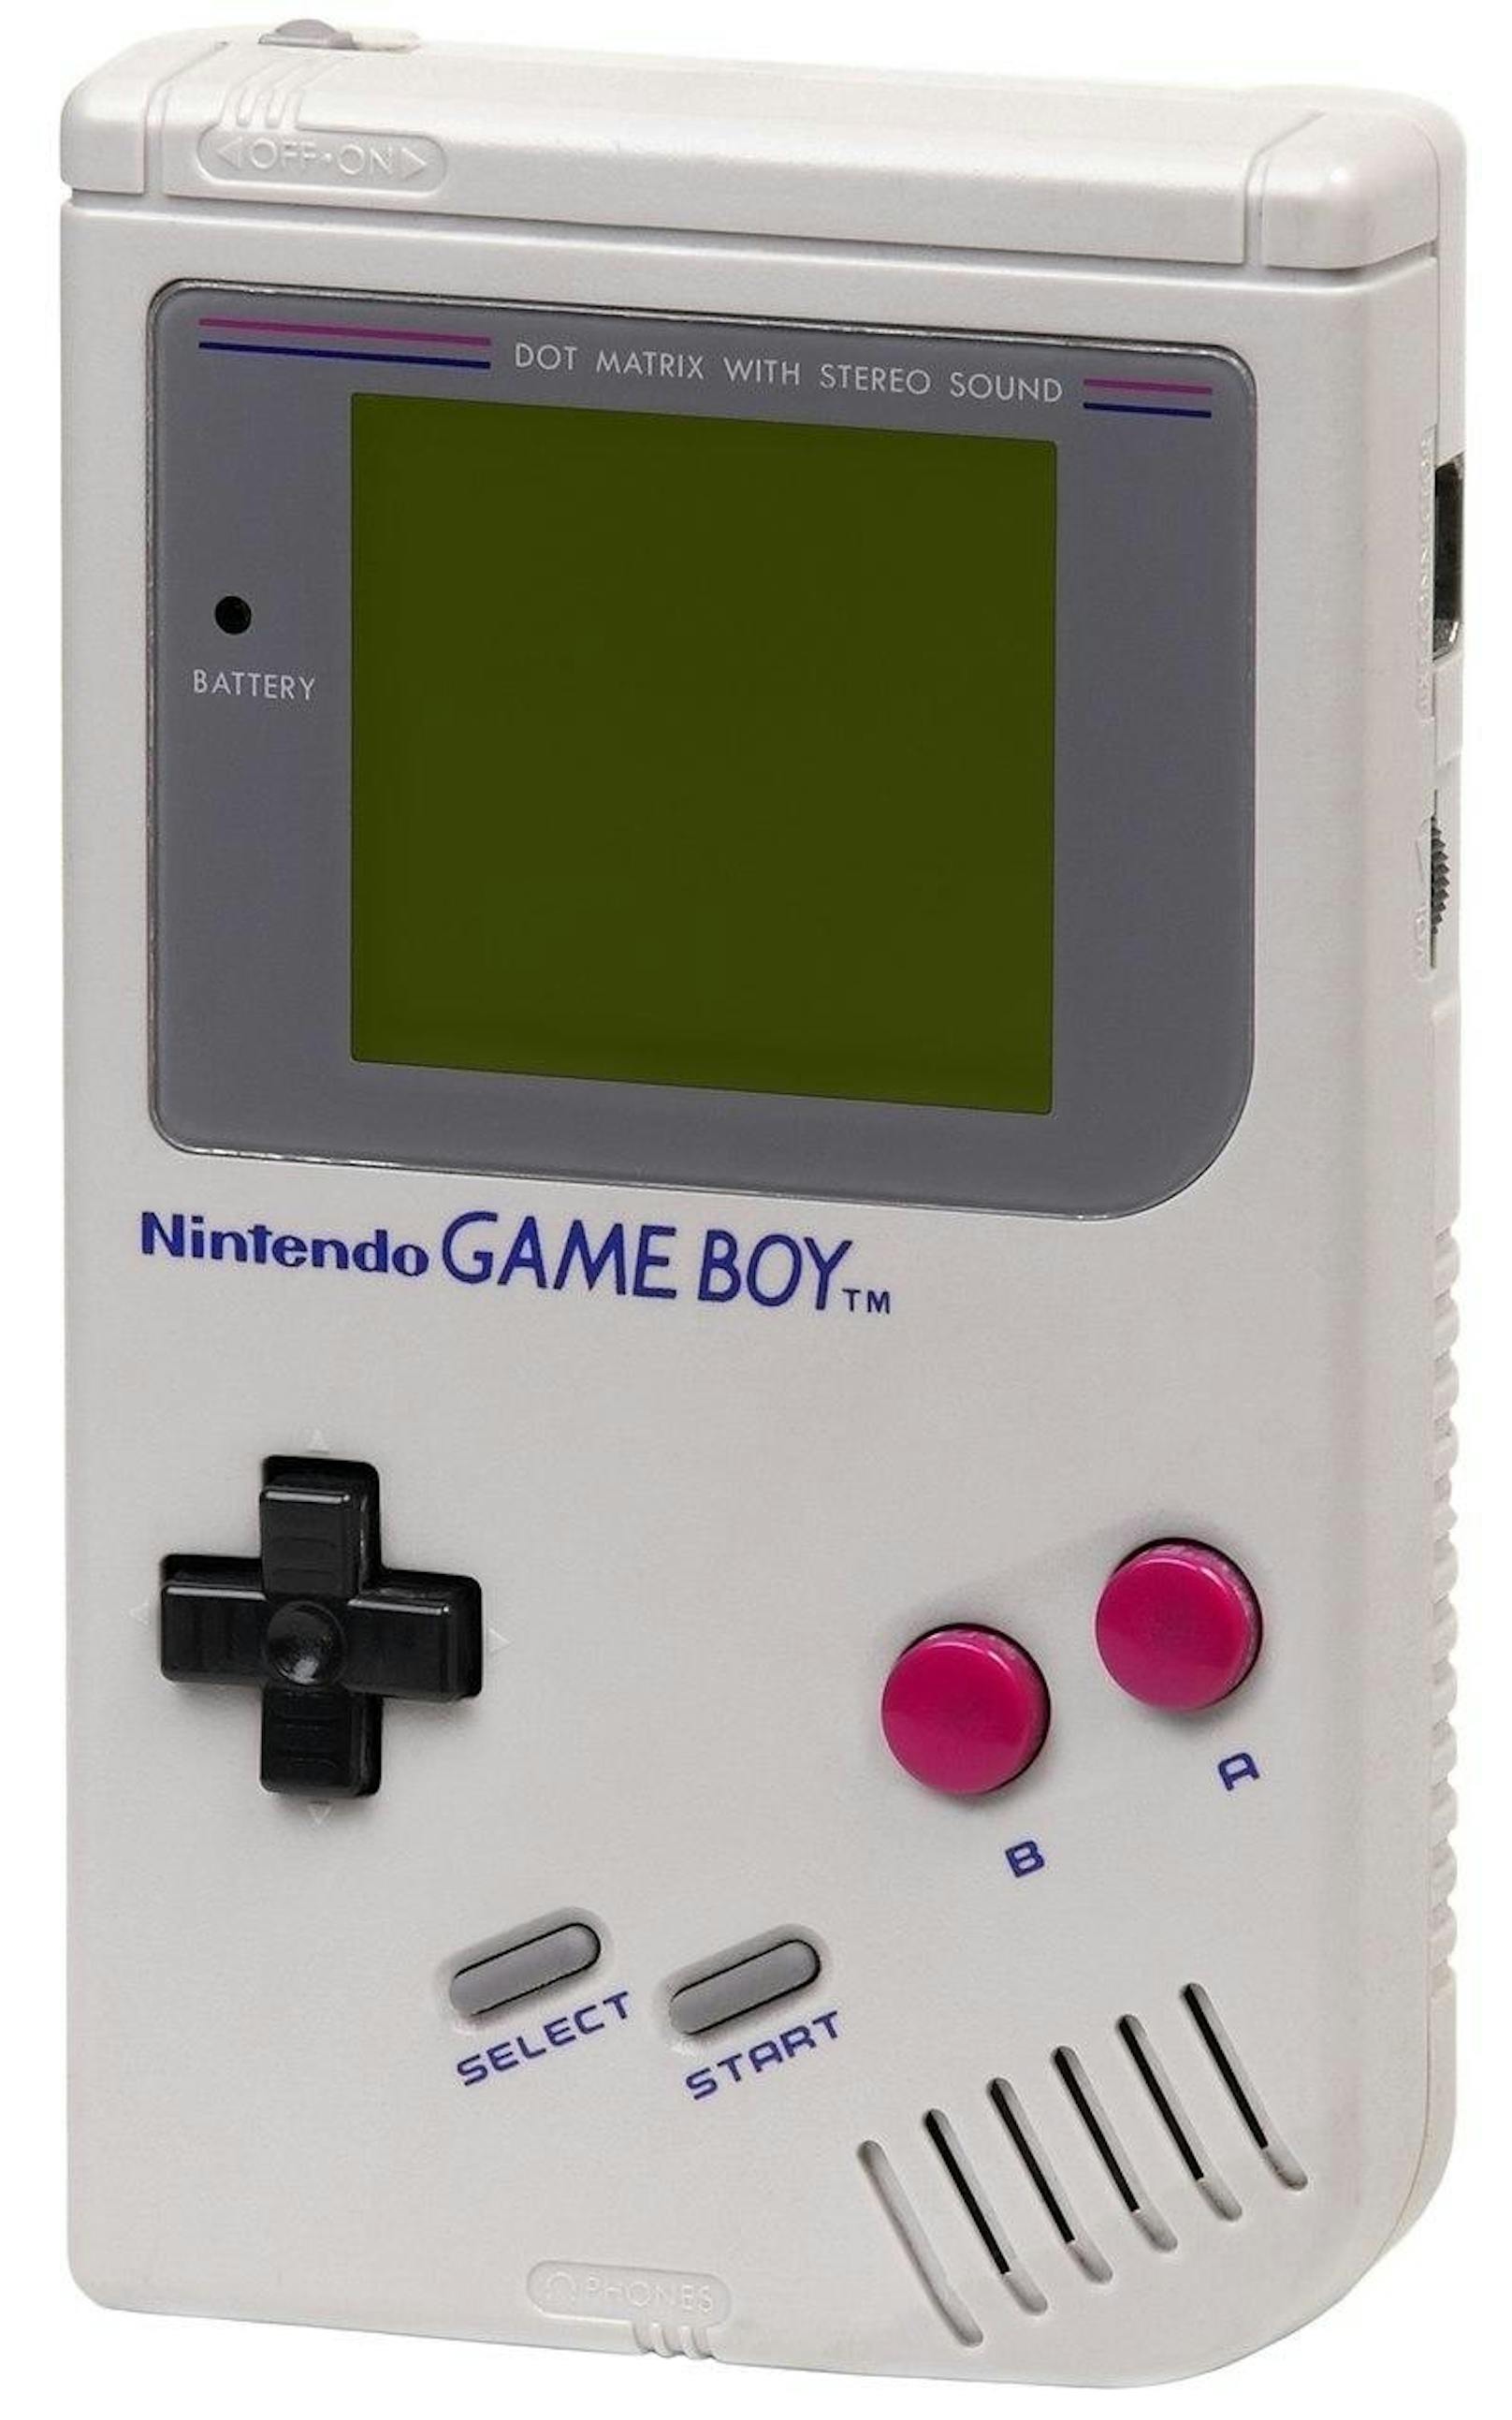 1989 stellte Nintendo eine tragbare Konsole vor, die den Markt revolutionieren und die Strategie des Unternehmens jahrzehntelang prägen sollte: Den Game Boy. Verkauft wurde die Konsole gemeinsam mit Tetris - das süchtig machende Kultspiel zog nicht nur Kinder, sondern oft auch deren Eltern in seinen Bann.